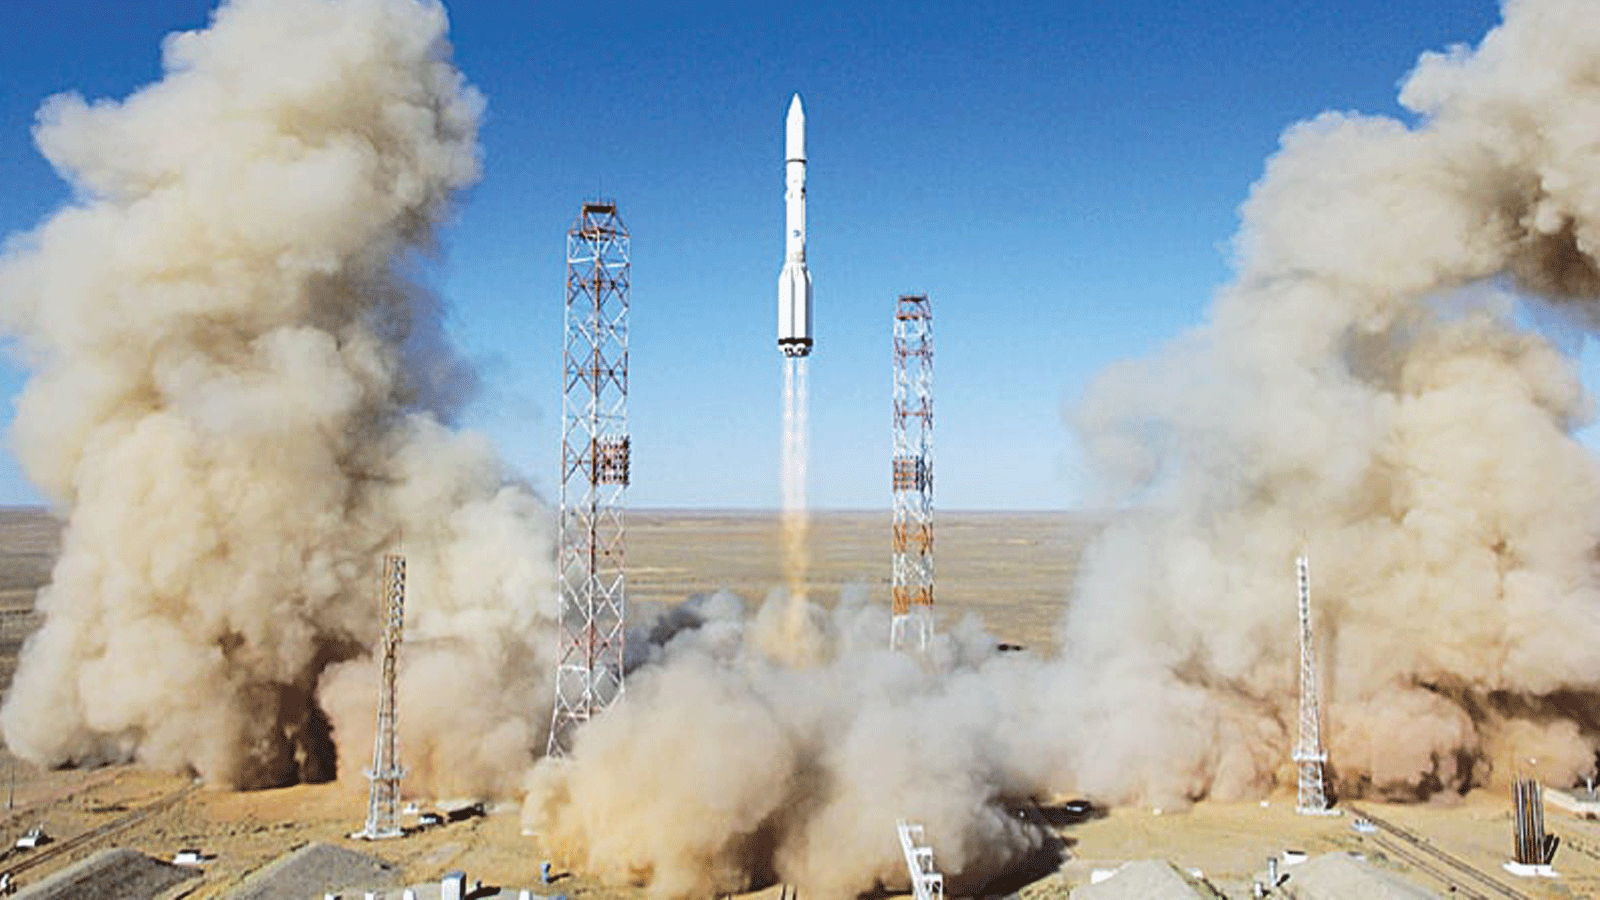 صورة لصاروخ بروتون-إم روسي الذي يحمل قمر اتصالات بريطاني، إنمارسات -5 إف 3، وانطلق من منصة قاعدة بايكونور الفضائية المستأجرة في روسيا. آب/ أغسطس 2015